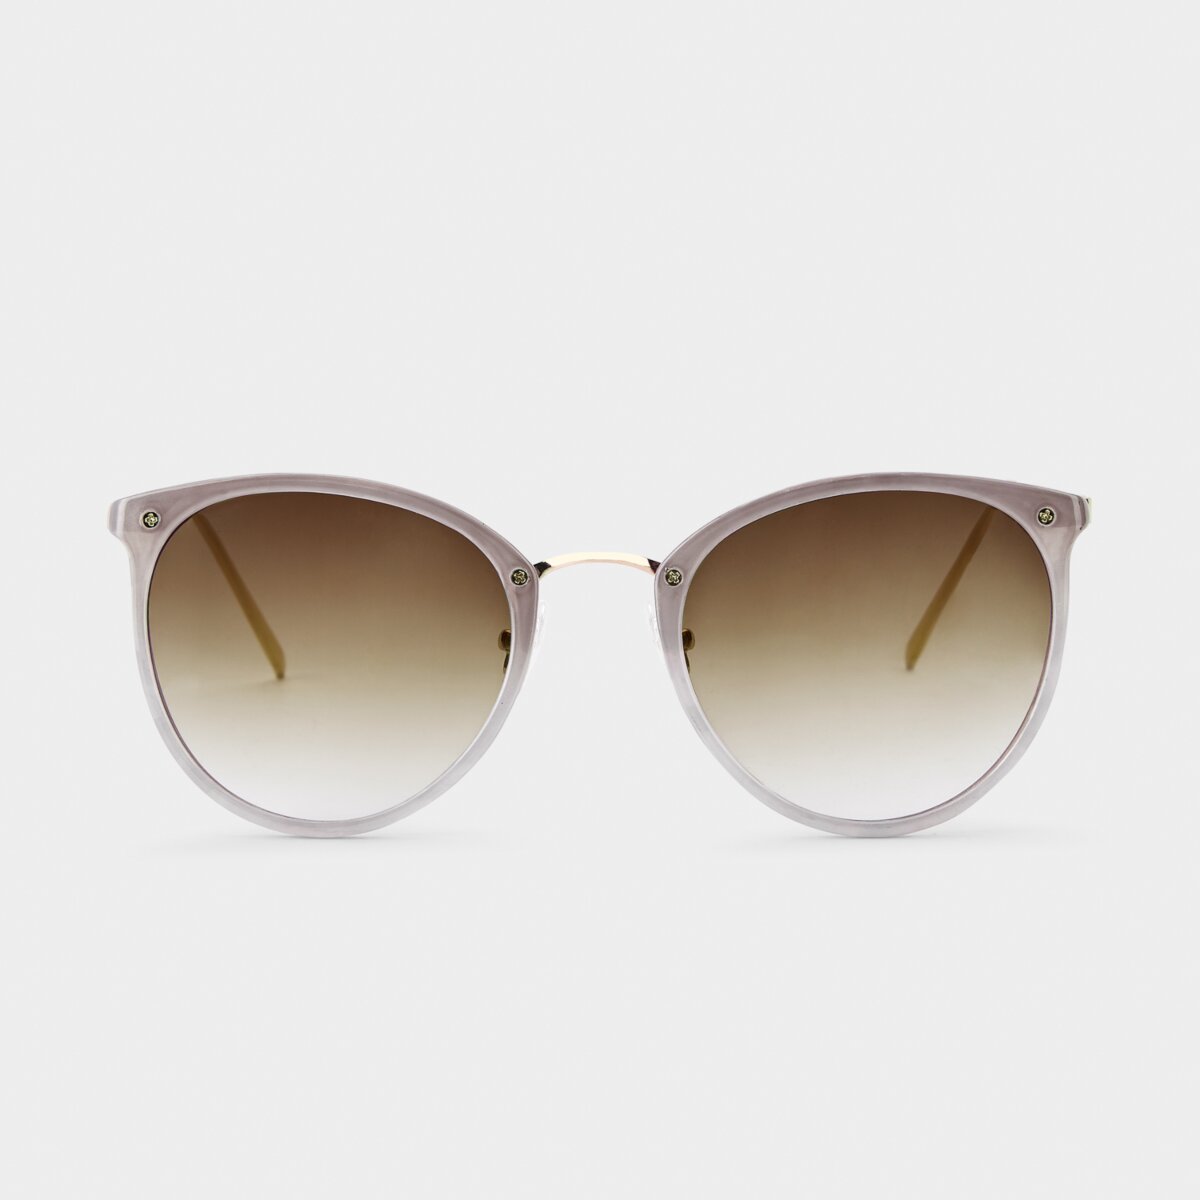 Santorini Sunglasses in Taupe Gradient